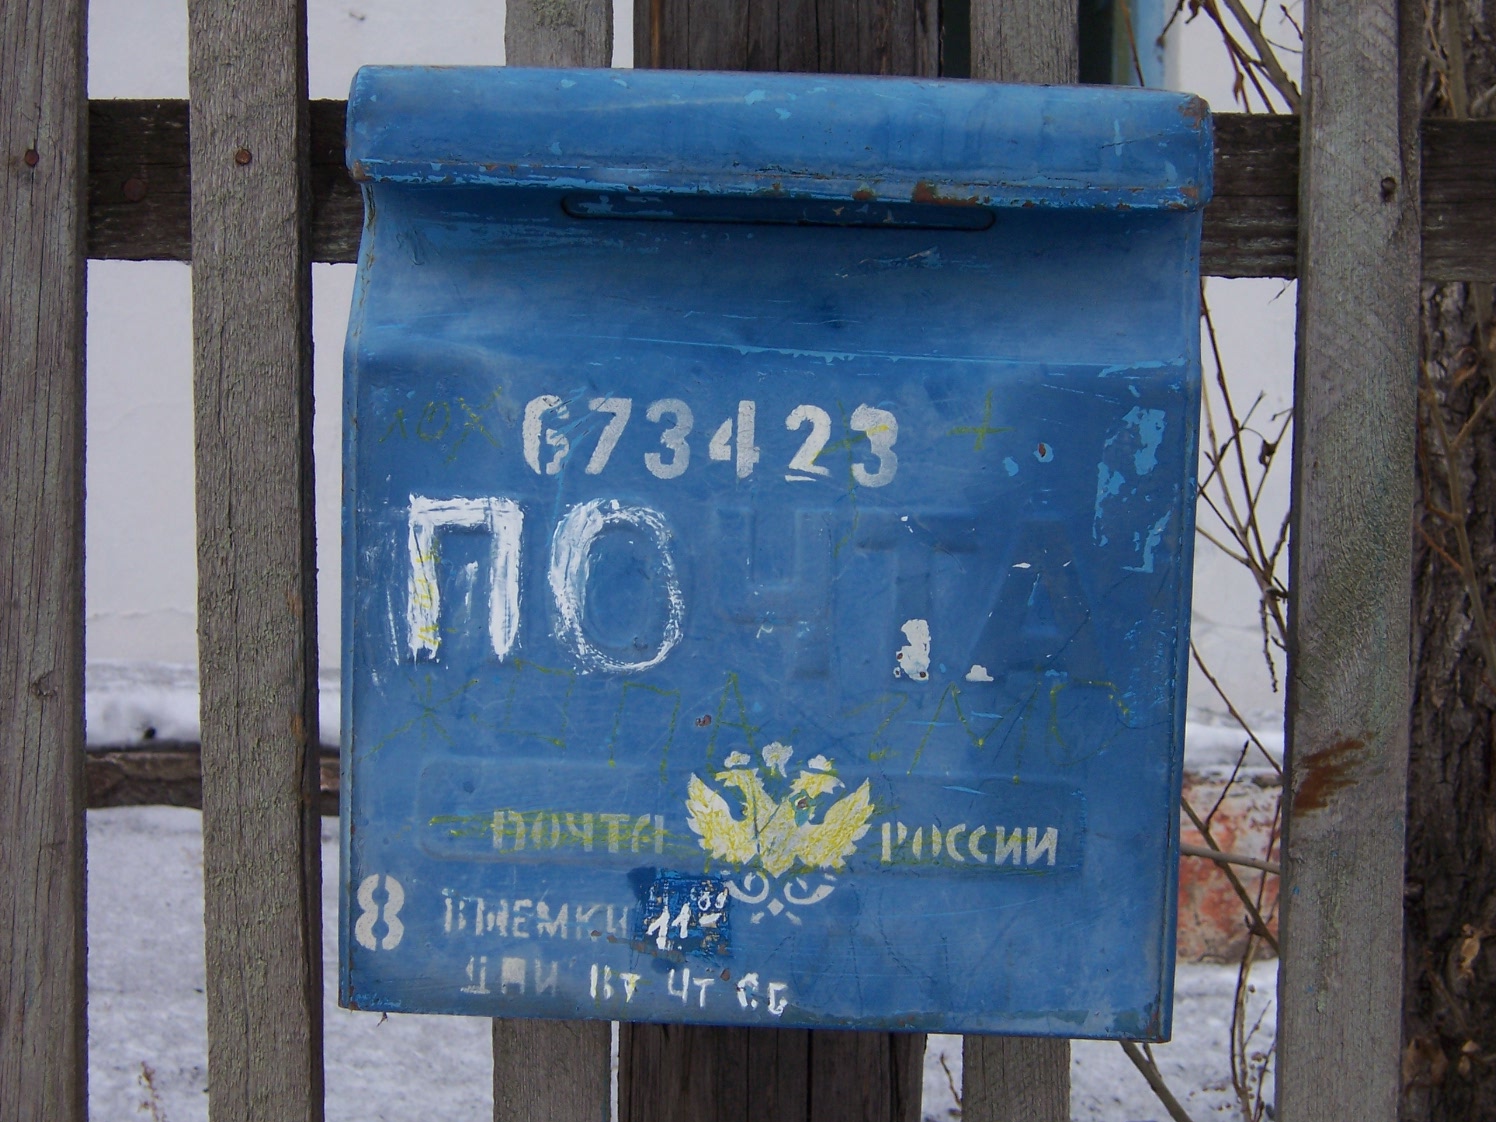 ФАСАД, отделение почтовой связи 673423, Забайкальский край, Нерчинский р-он, Знаменка